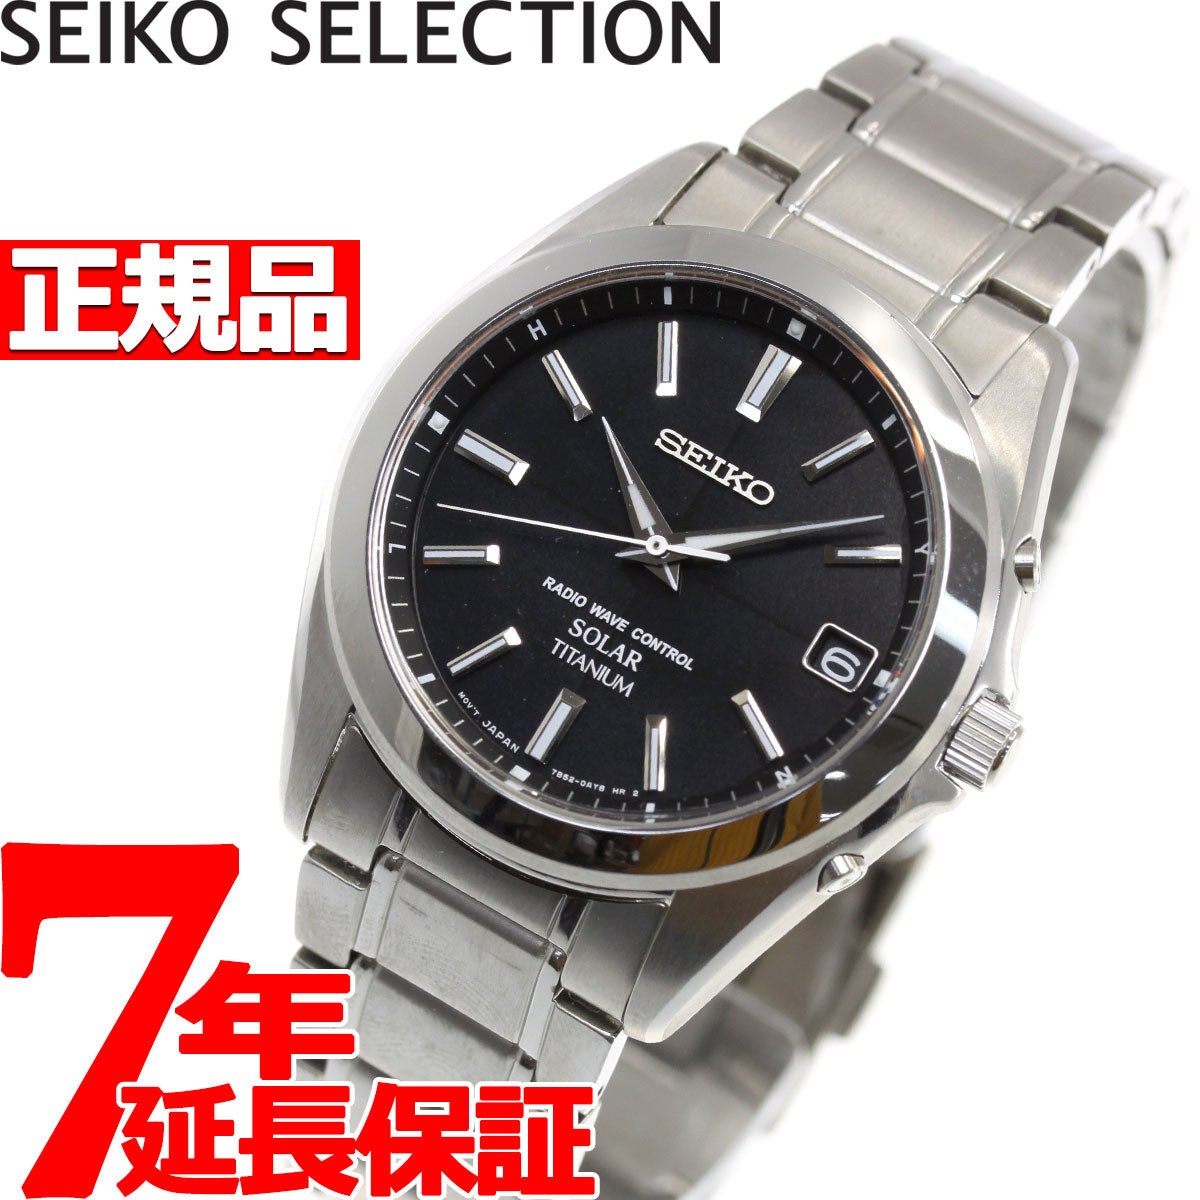 セイコー セレクション SEIKO SELECTION 電波 ソーラー 電波時計 腕時計 メンズ SBTM217